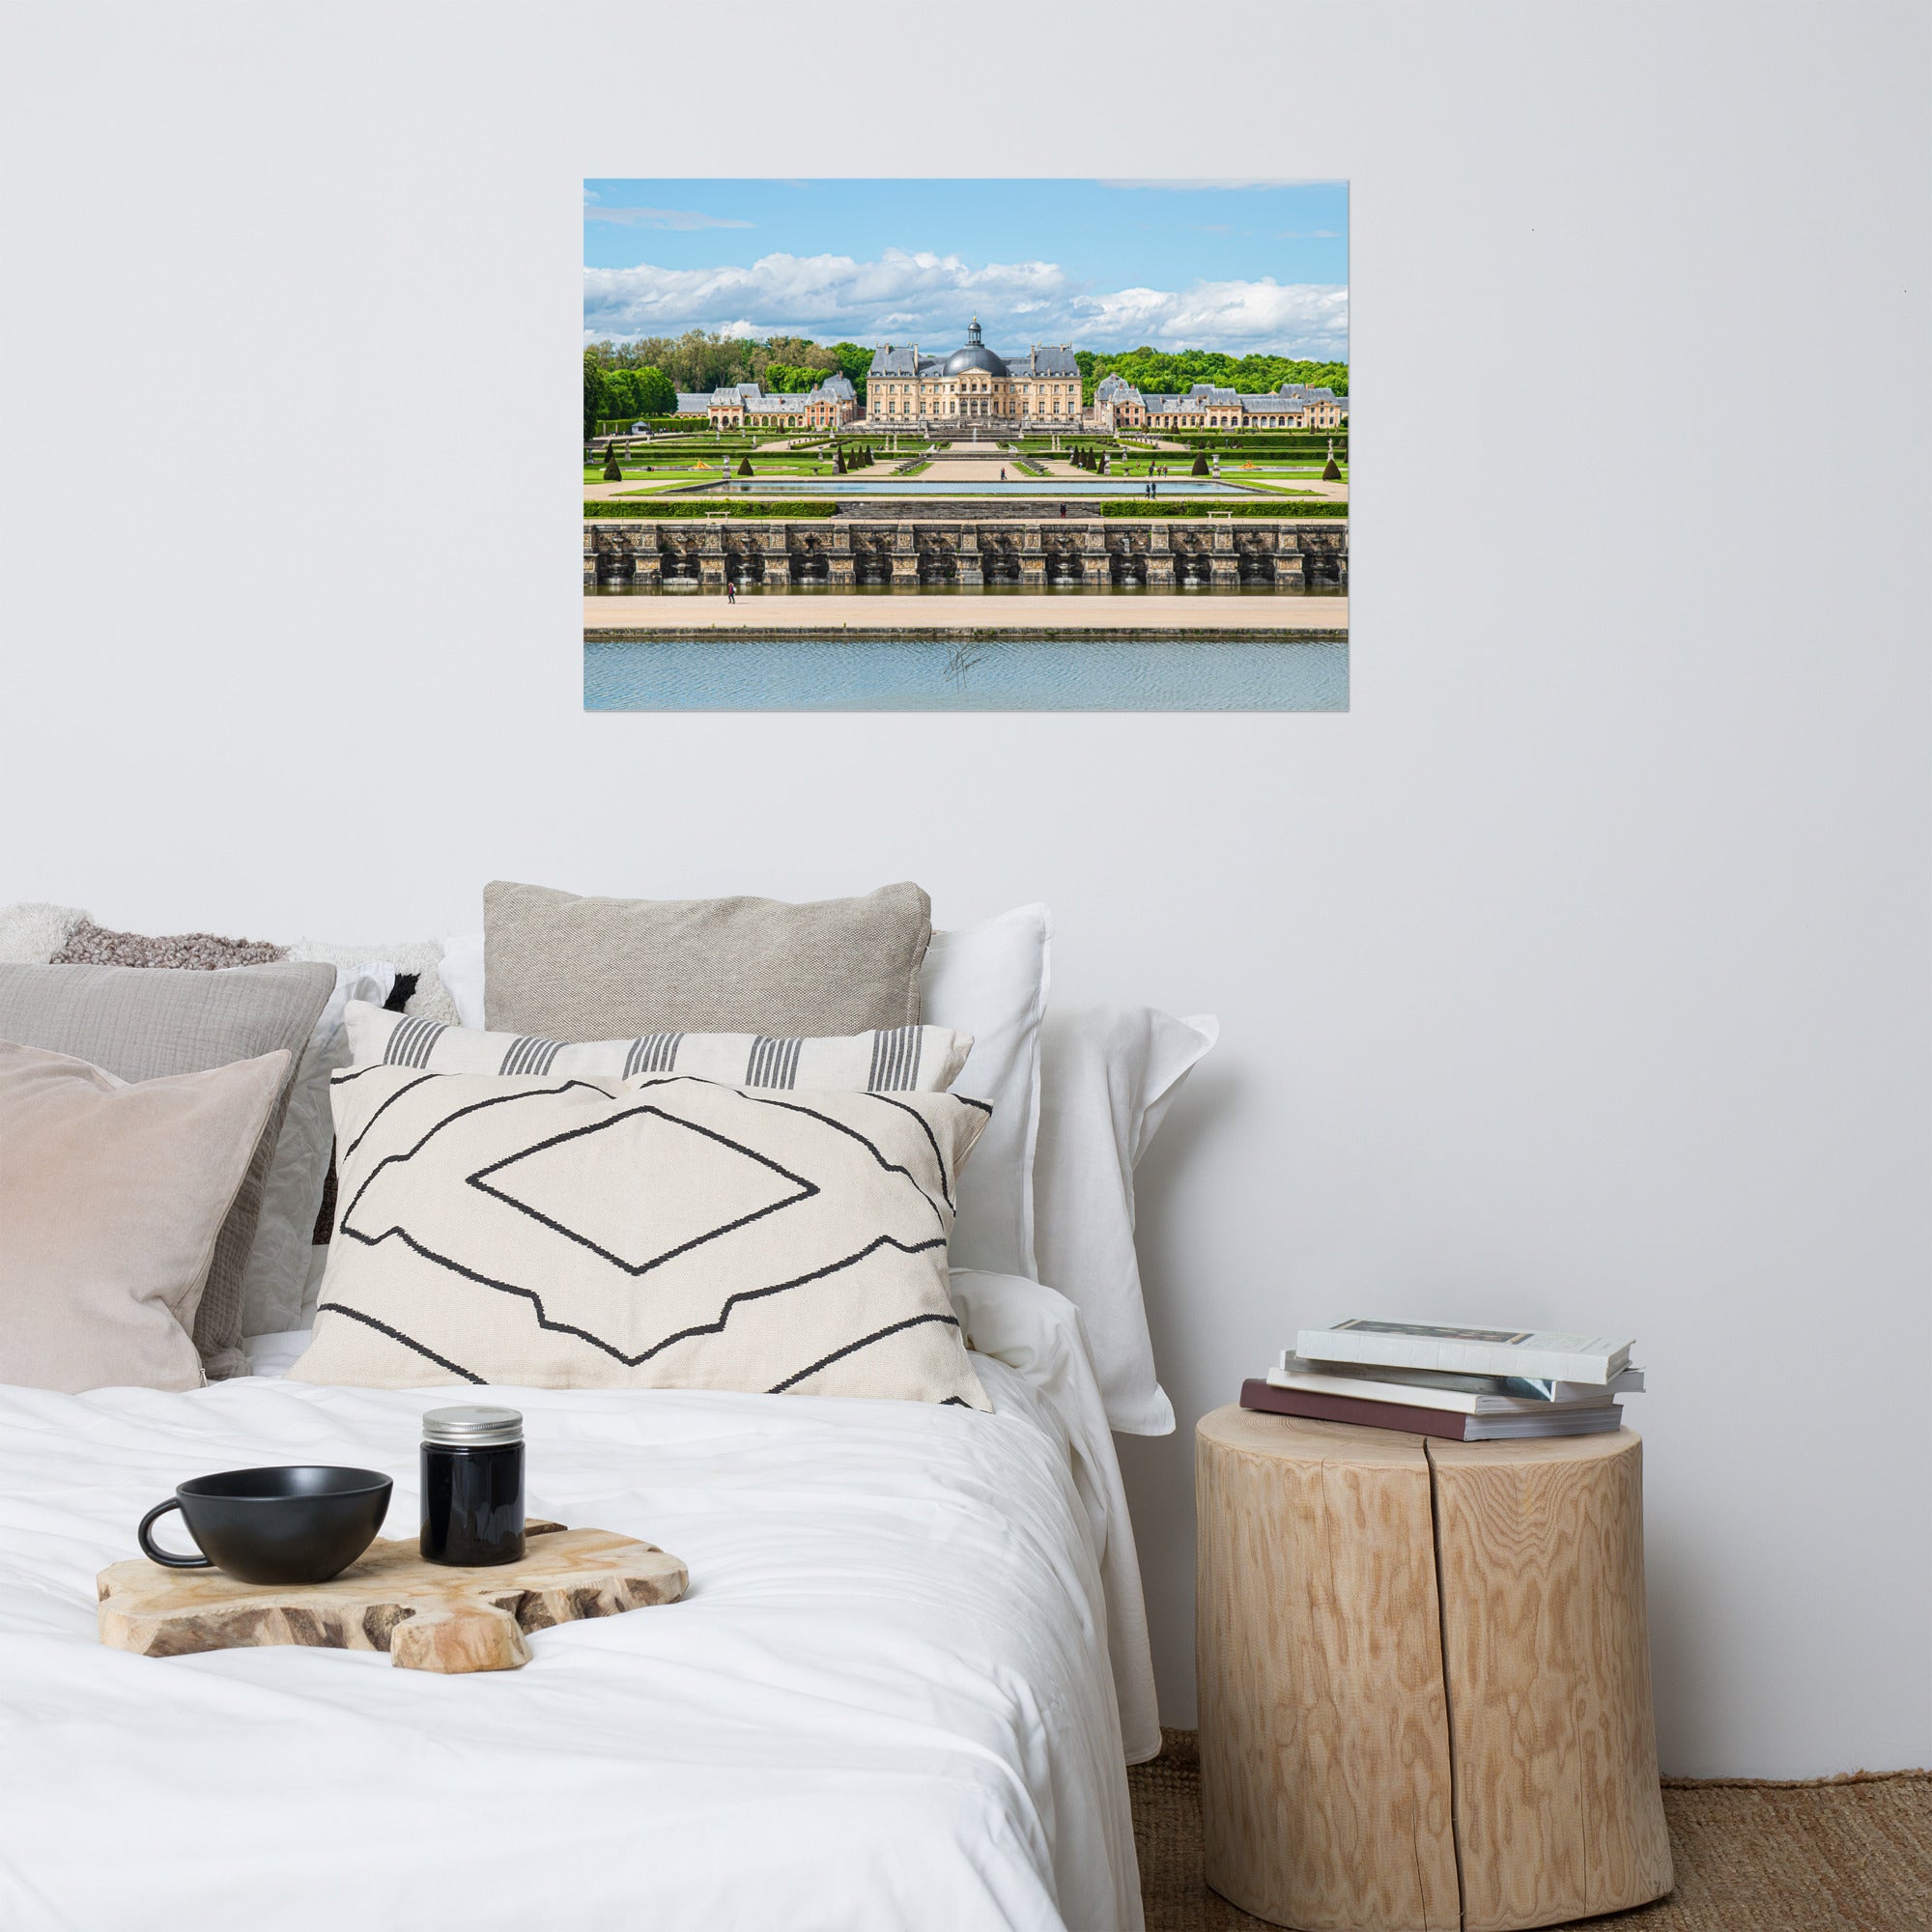 Photographie du Château de Vaux-le-Vicomte sous un ciel clair, mettant en valeur ses jardins impeccables et sa majestueuse architecture du XVIIe siècle.